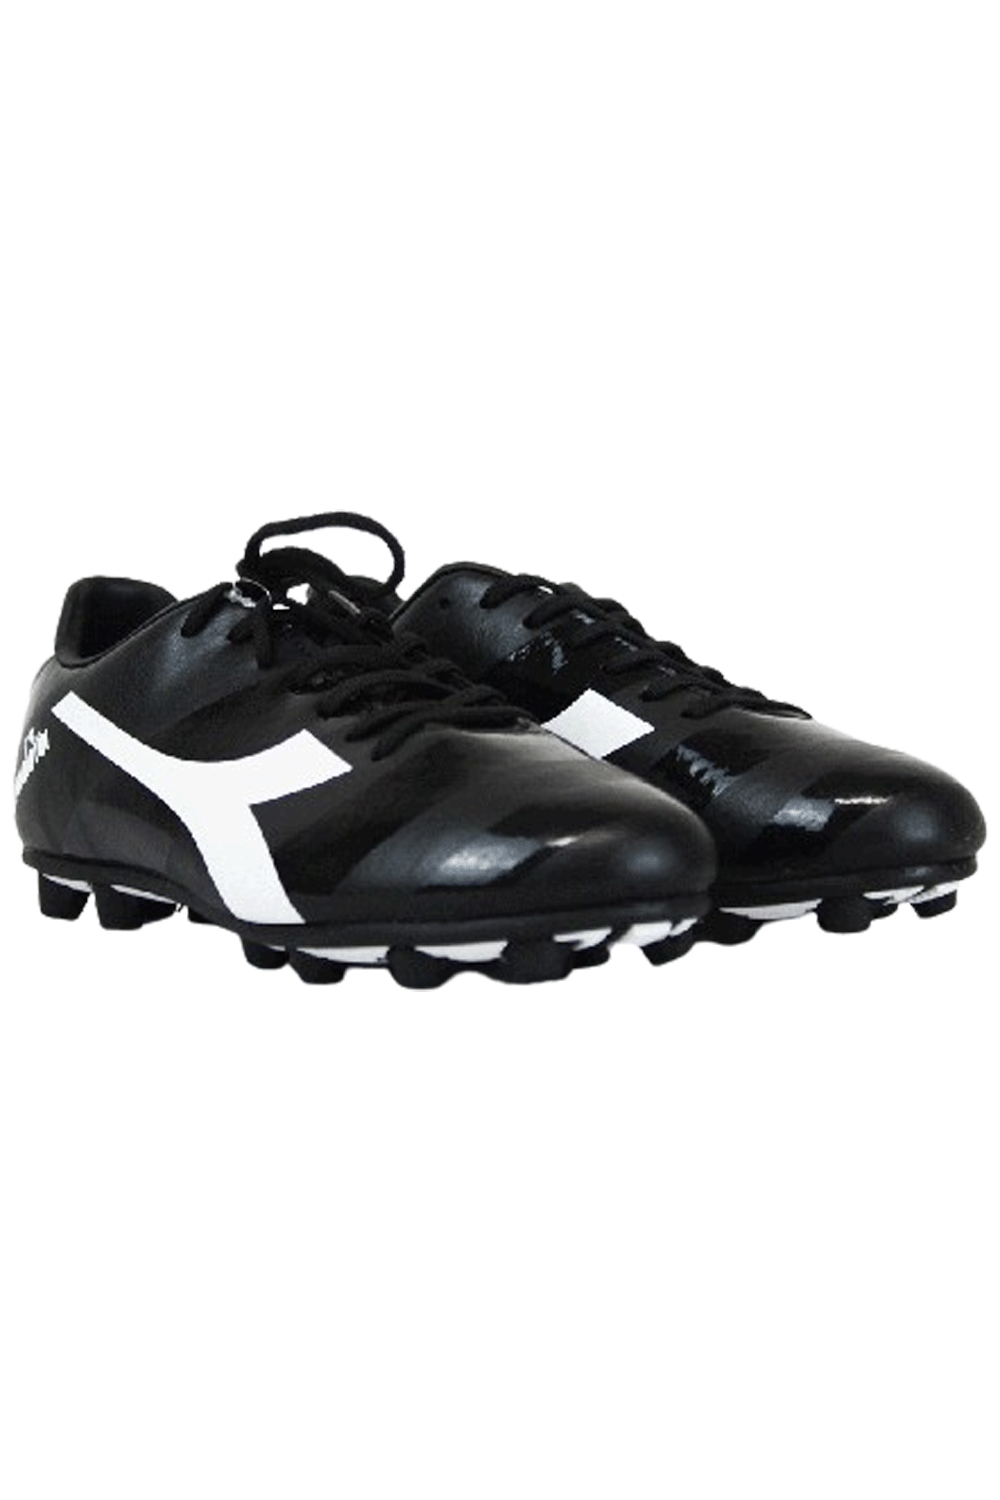 Diadora Dynamo Soccer Black Boots